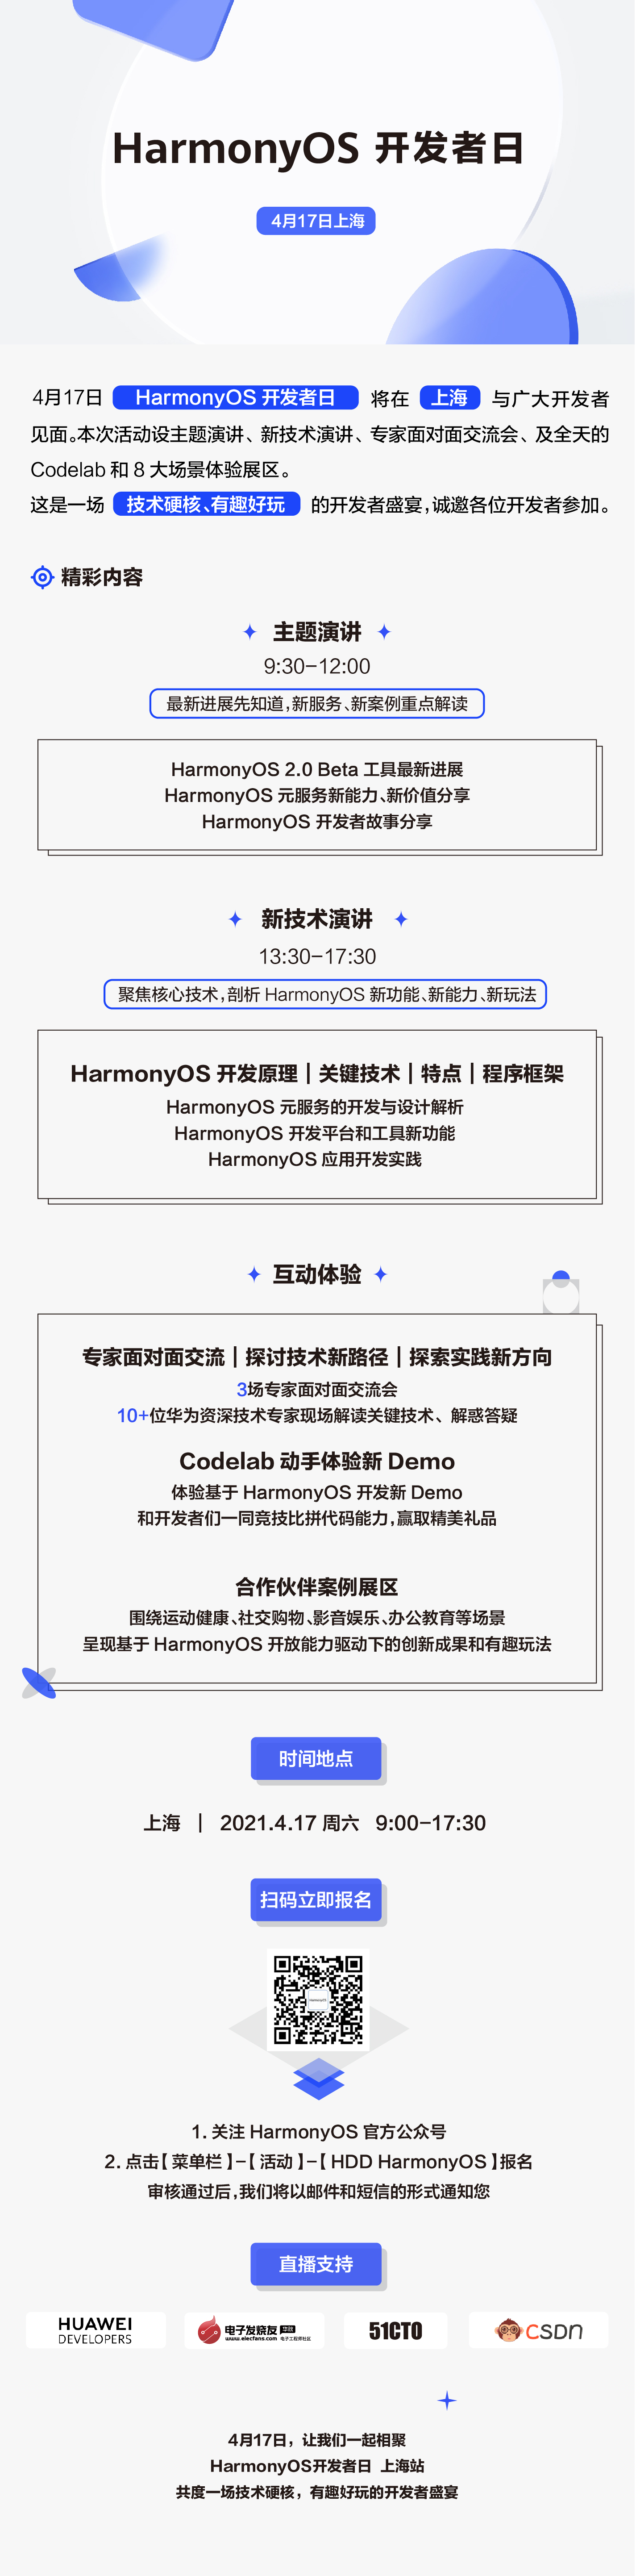 首场HarmonyOS Developer Day报名正式开启！-开源基础软件社区